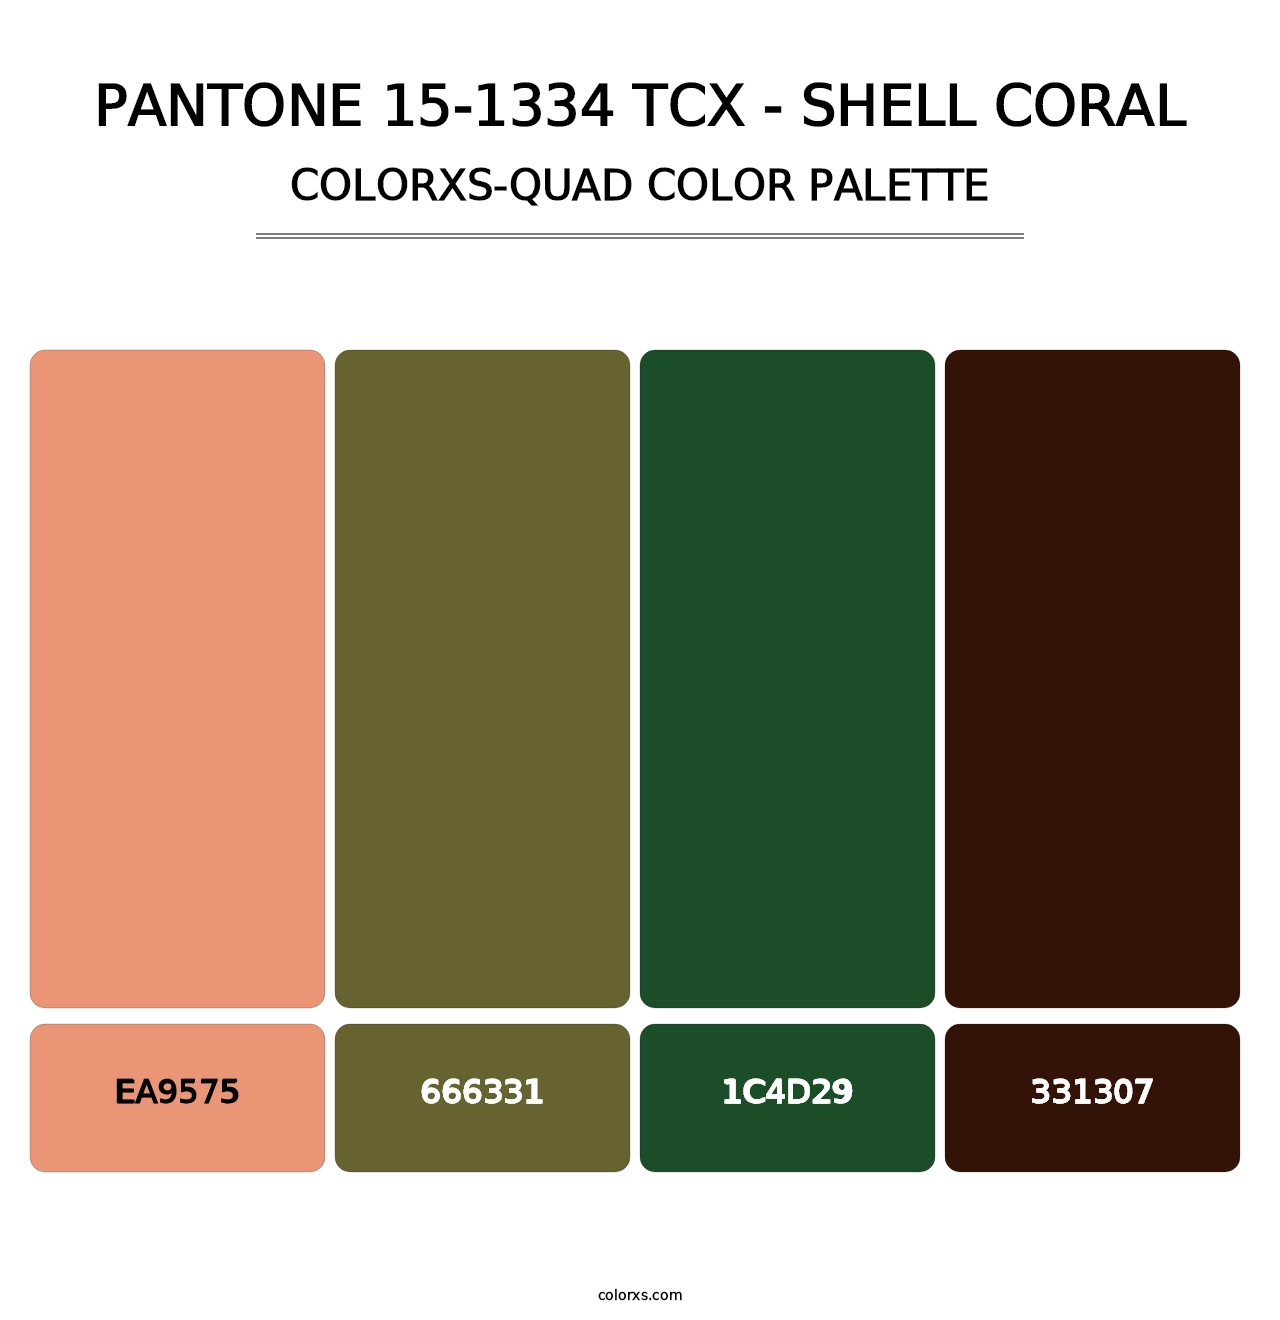 PANTONE 15-1334 TCX - Shell Coral - Colorxs Quad Palette